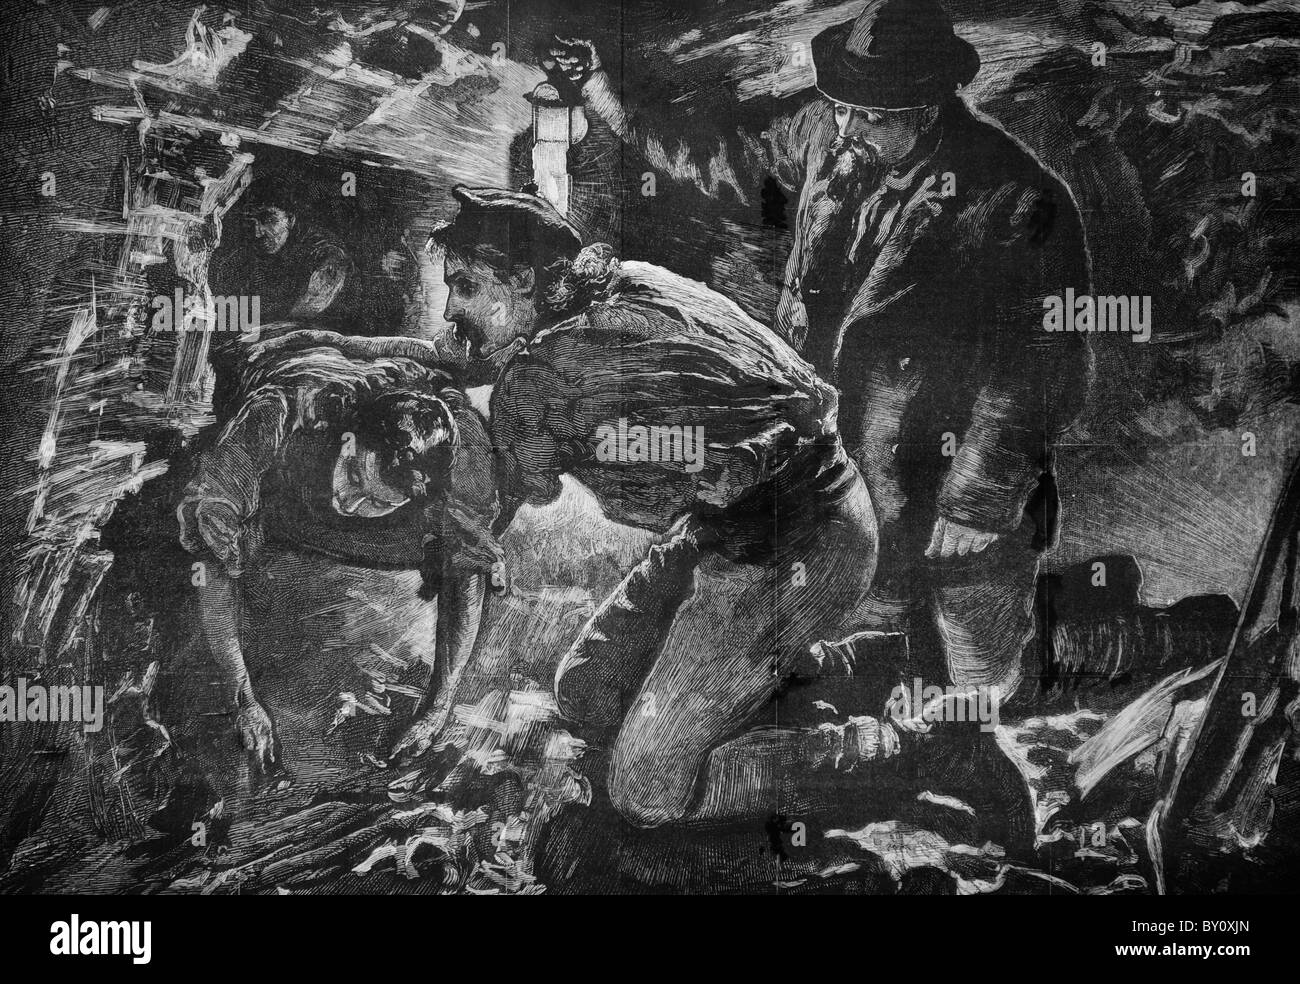 Les hommes de la mine de charbon Troedyrhiw ont été sauvés de l'inondation de la mine pour laquelle ils ont été piégés 10 jours gravure victorienne originale du 28 avril 1877 Sud Pays de Galles Royaume-Uni Banque D'Images